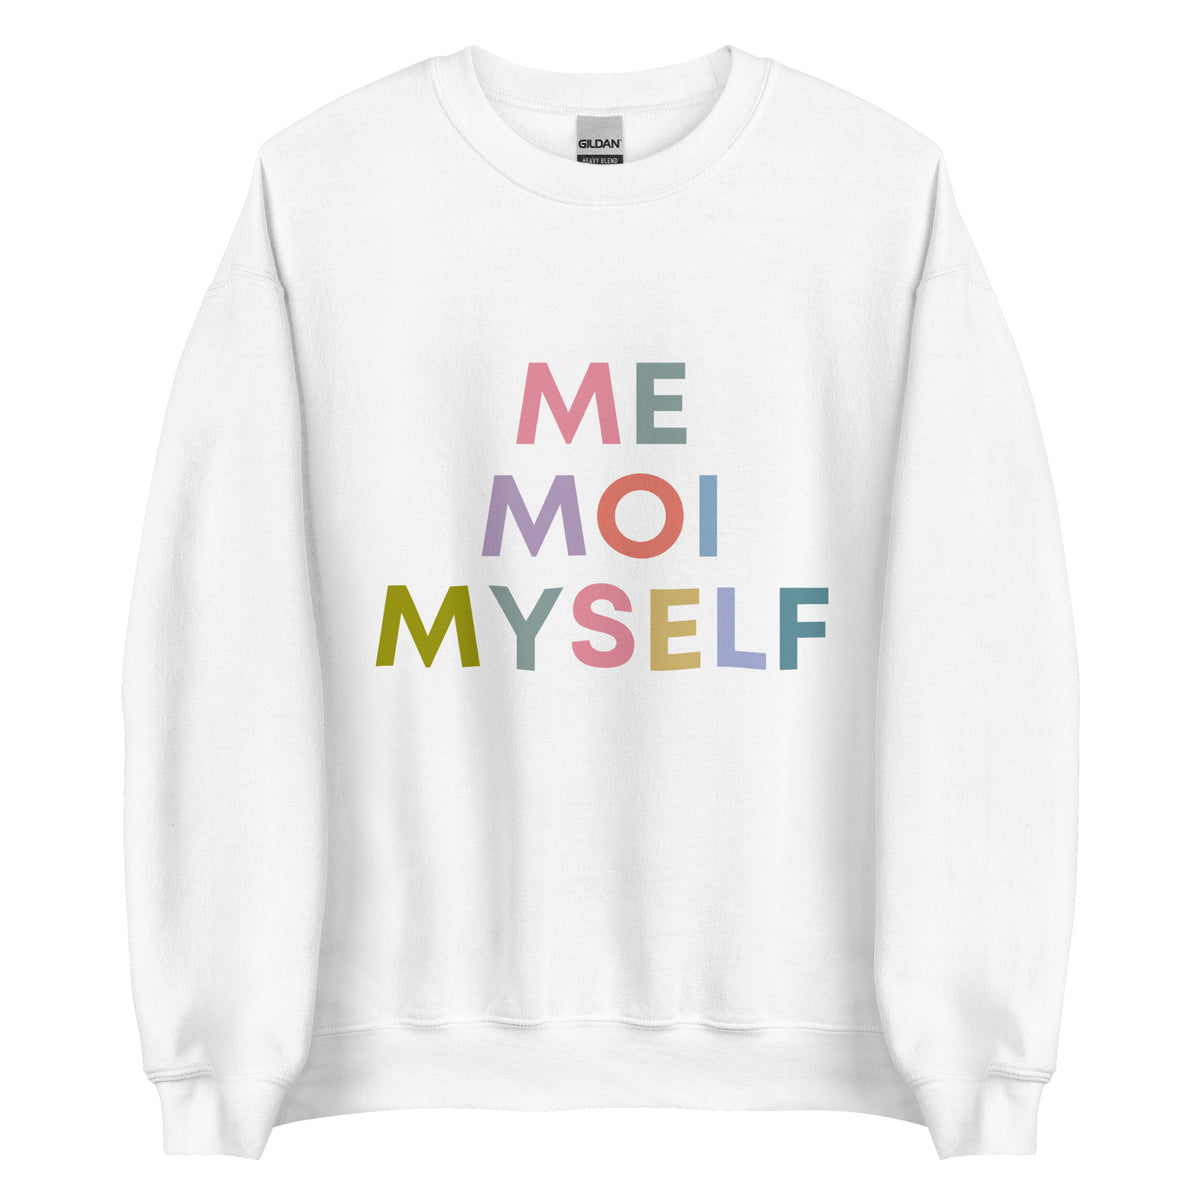 Me Moi Myself Sweatshirt